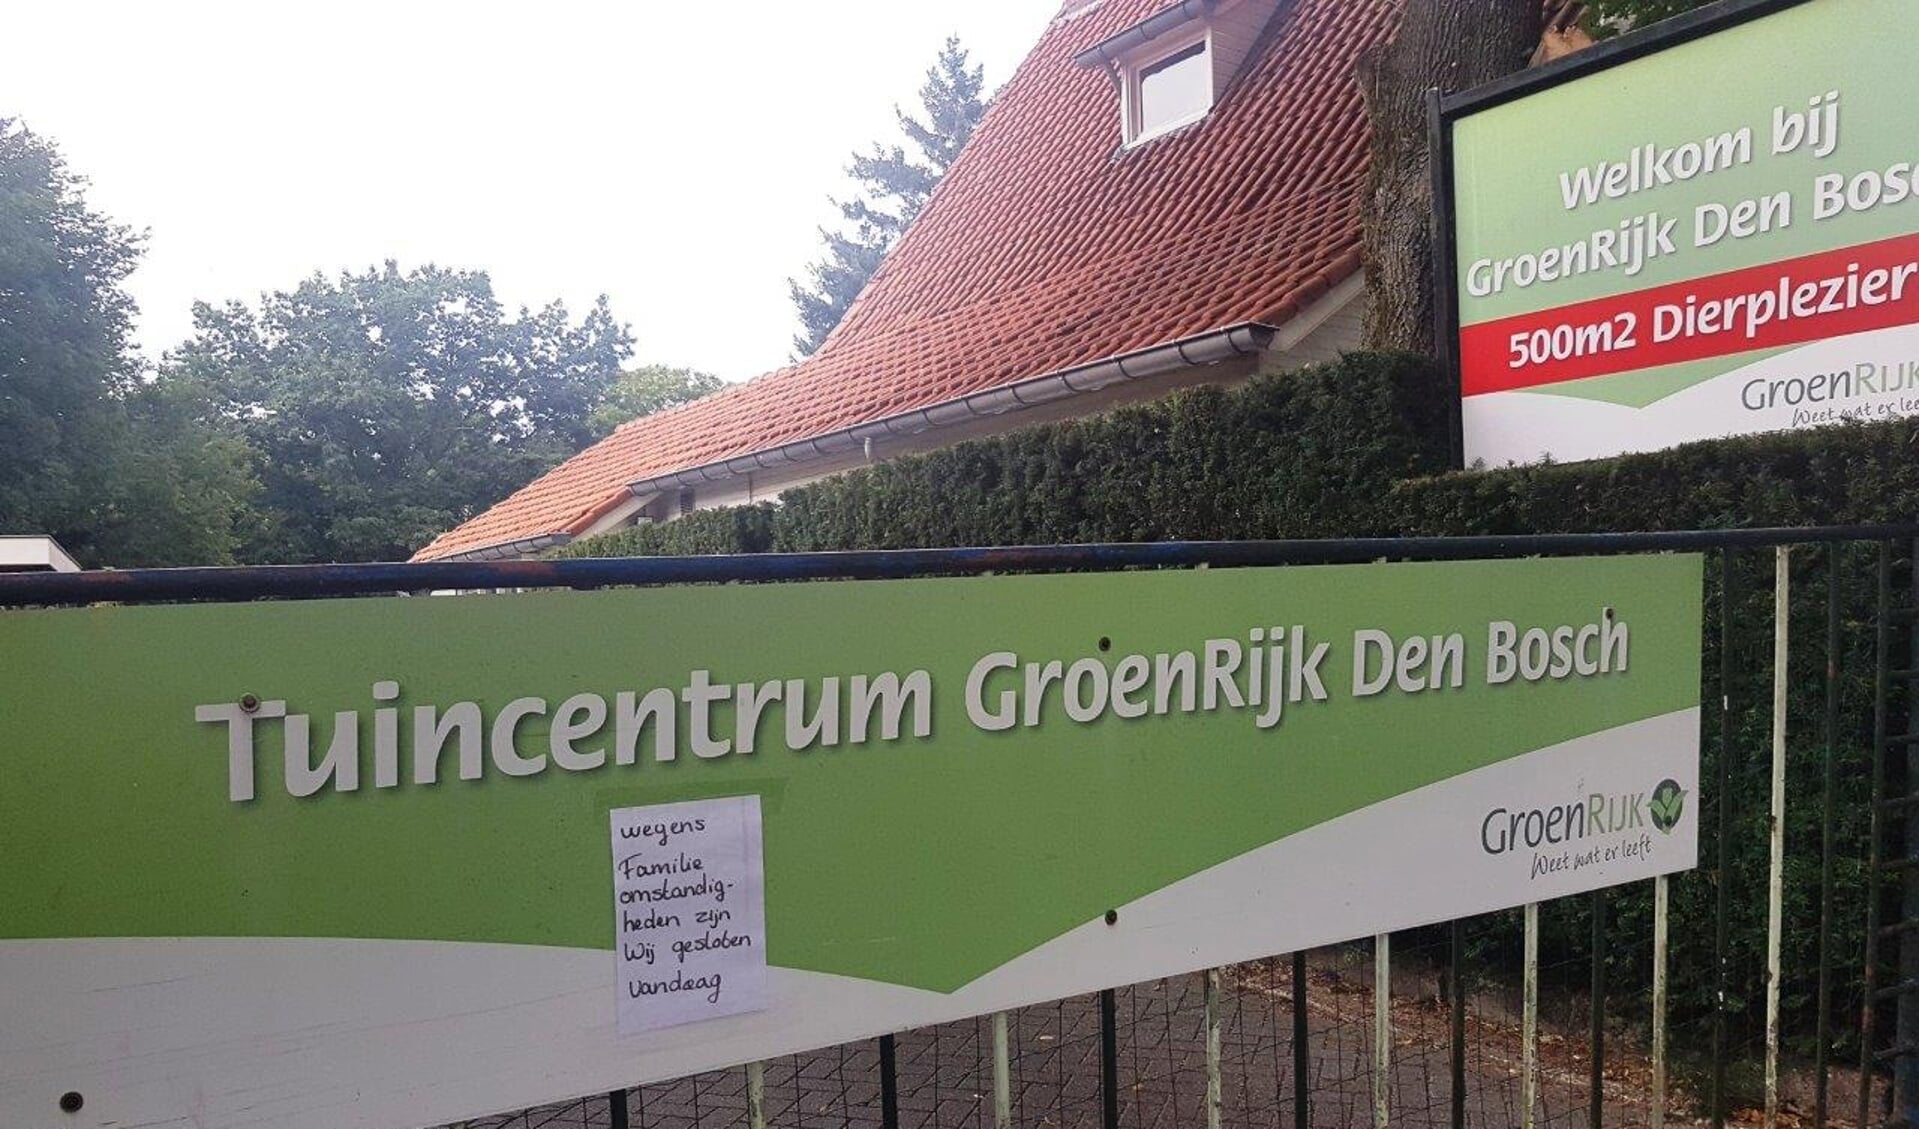 Tuincentrum GroenRijk aan de Graafseweg 244 in Den Bosch is vandaag logischerwijs gesloten.